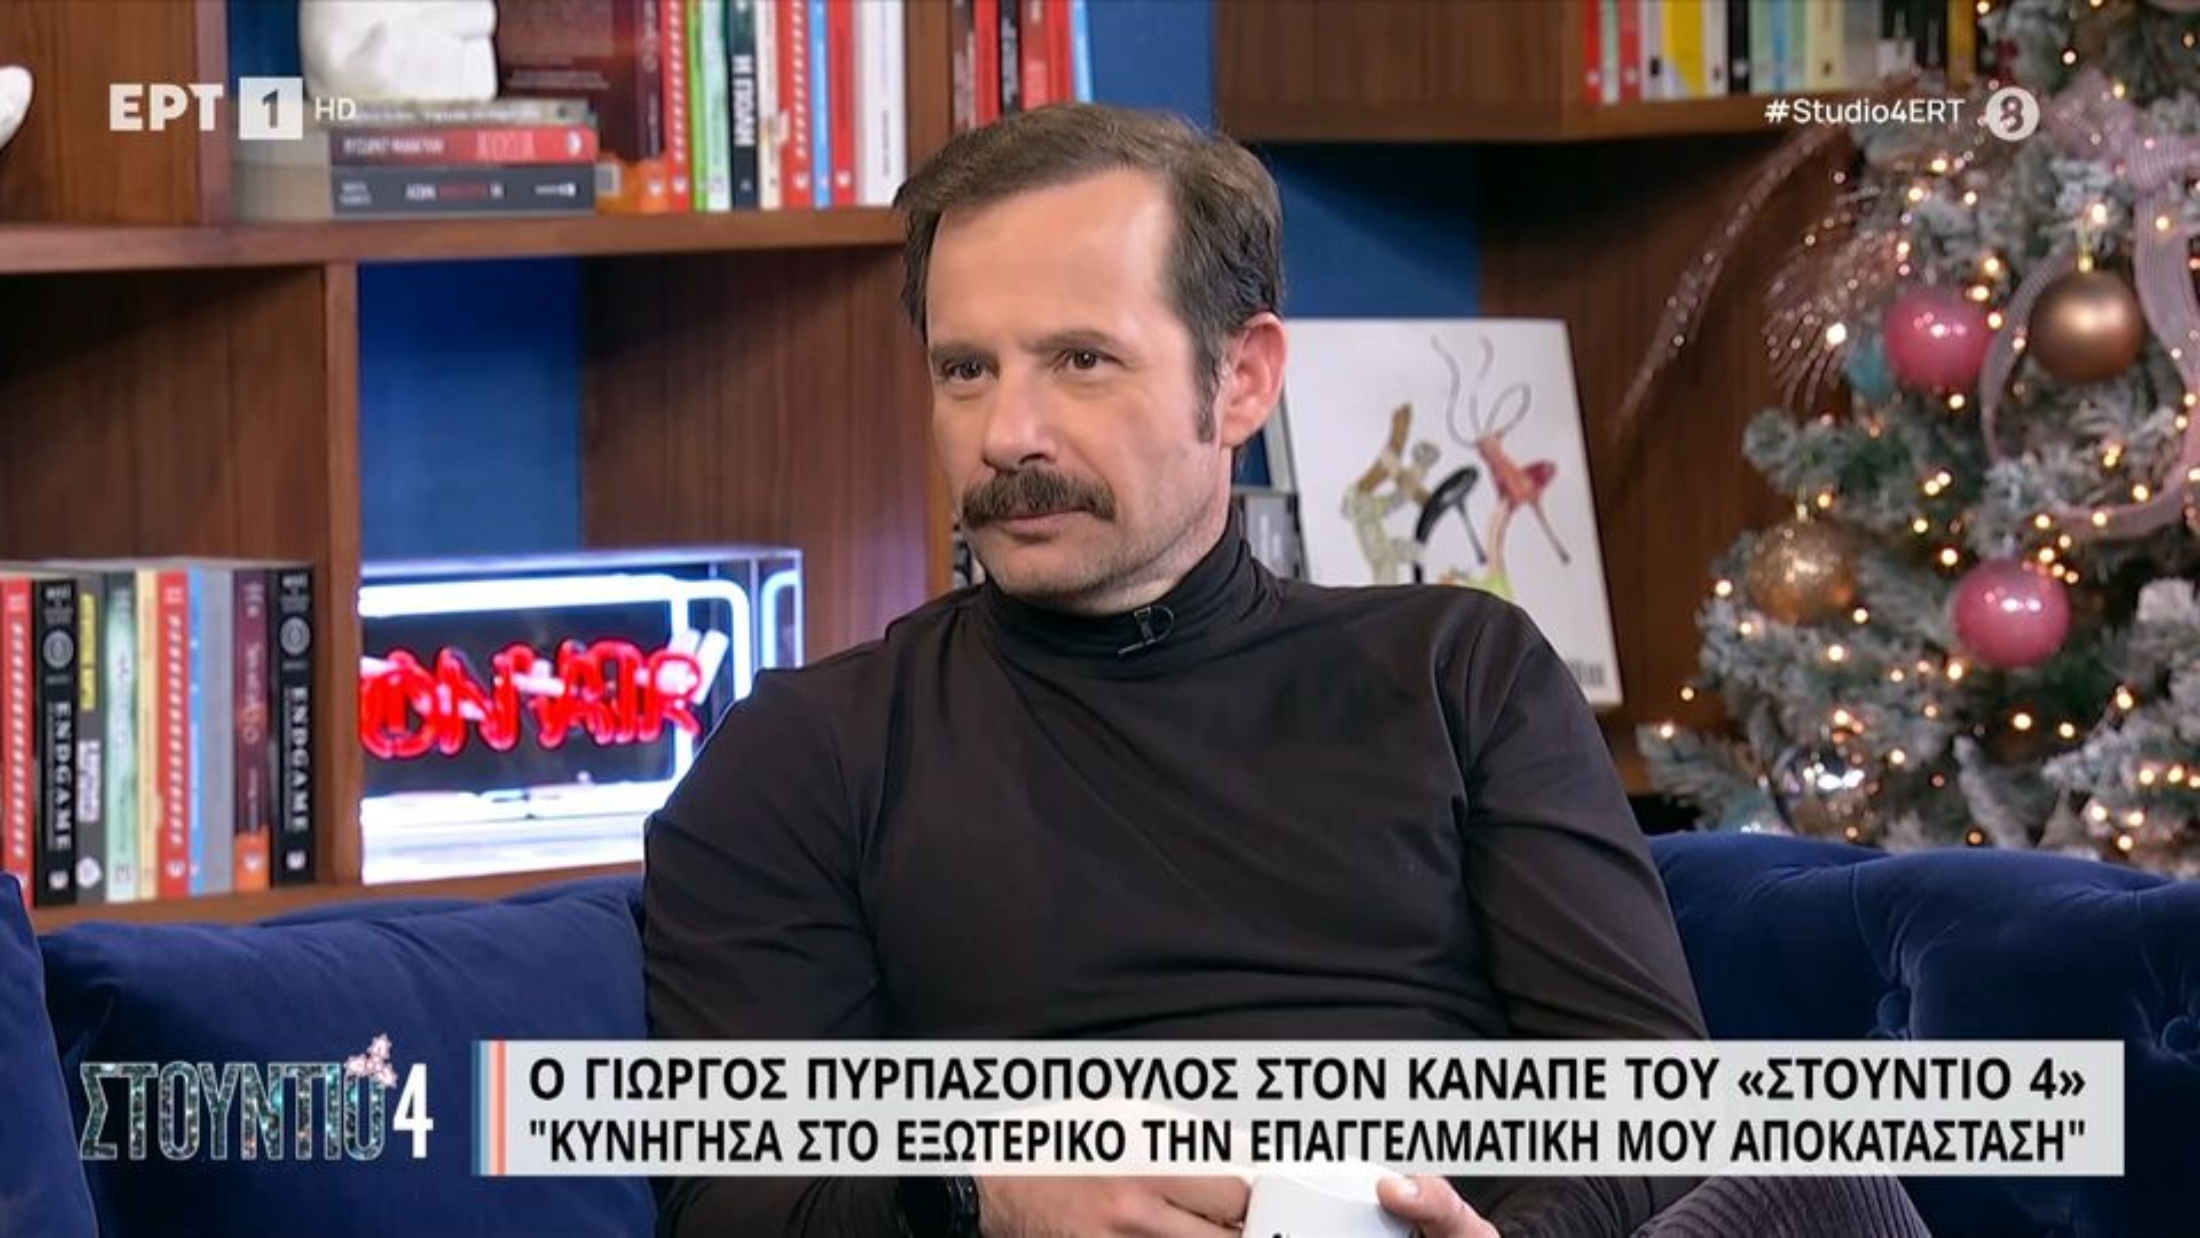 Γιώργος Πυρπασόπουλος: «Είχα κάνει οντισιόν για το "V For Vendetta" και θα έπαιζα τον πατέρα της Νάταλι Πόρτμαν» (VIDEO)